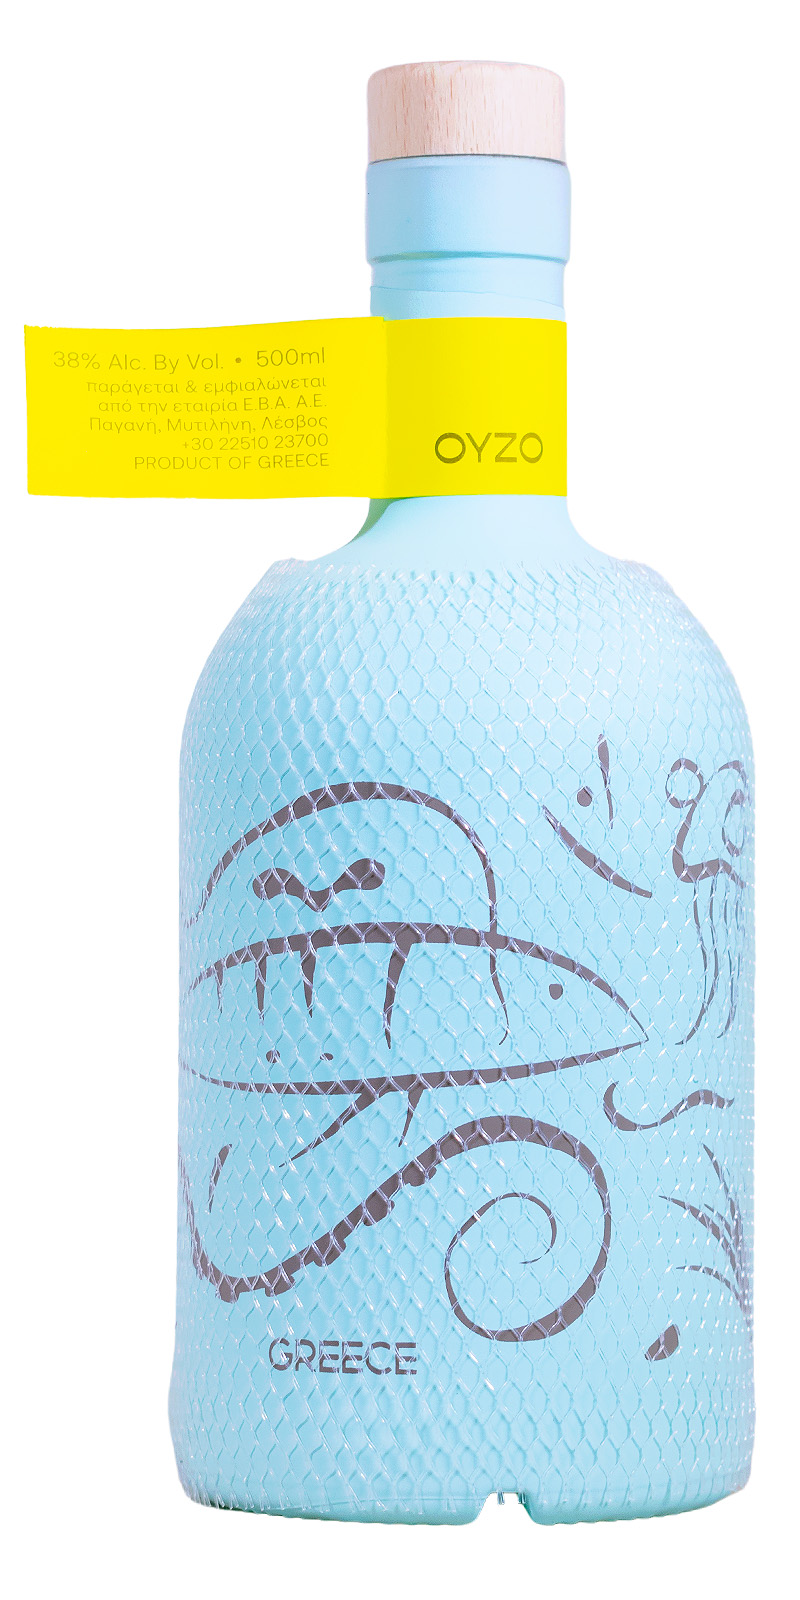 Mitilini Greece in a Bottle Ouzo - 0,5L 38% vol